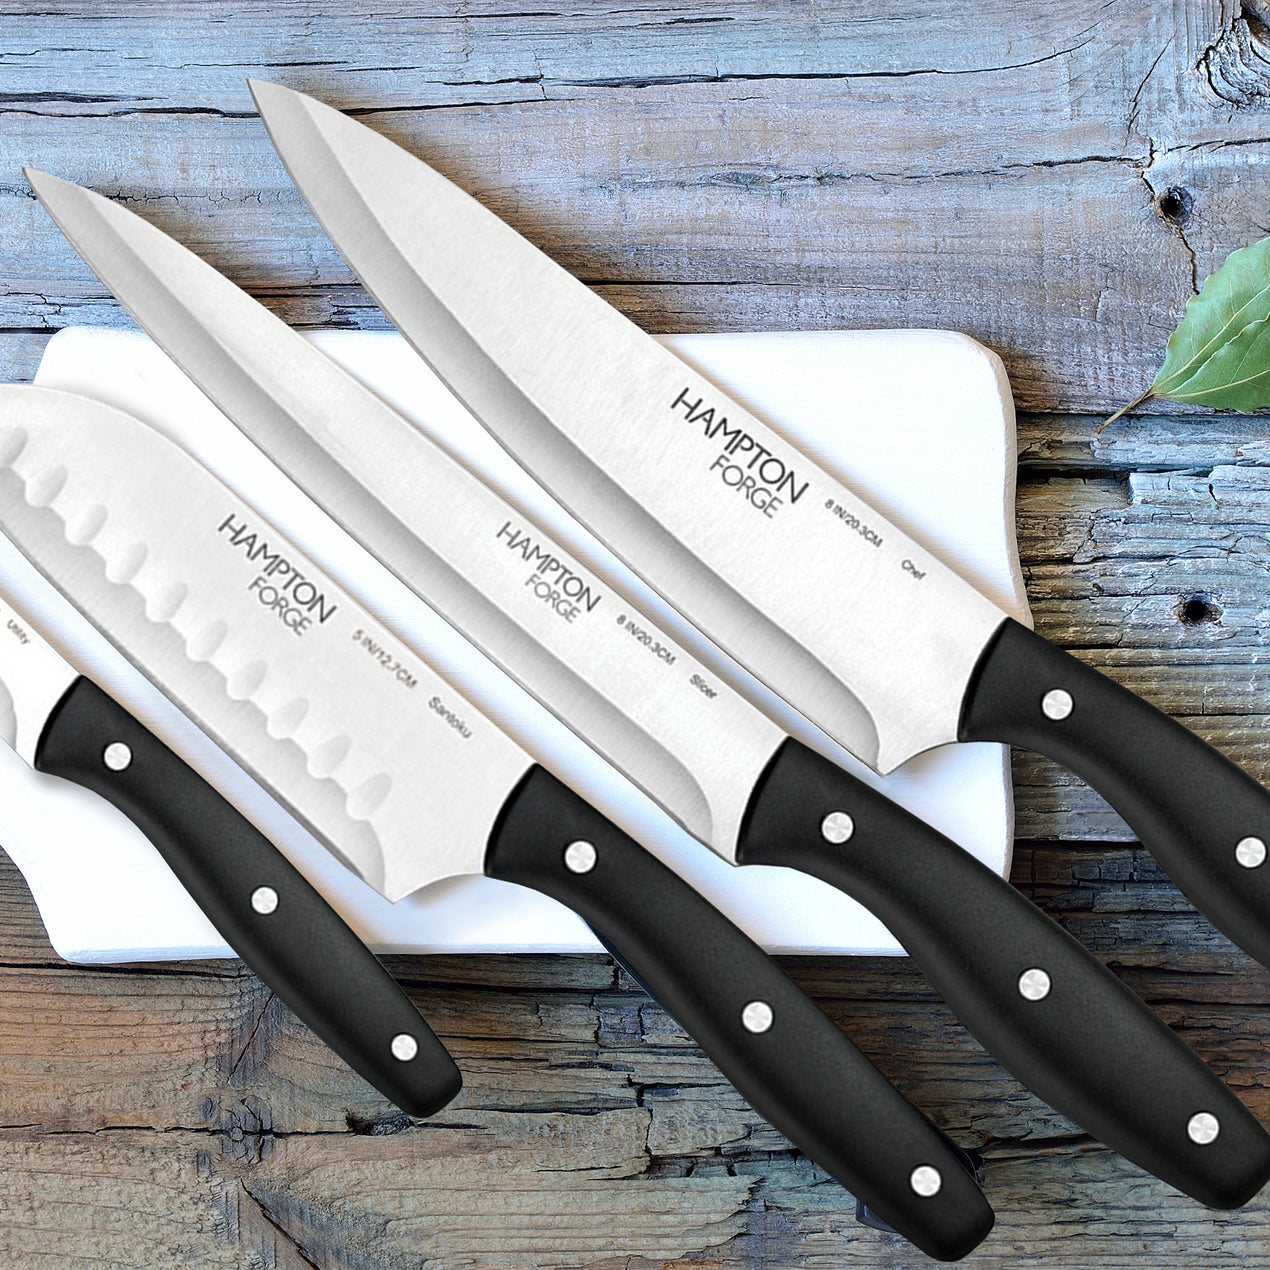 Oneida Stainless Steel Kitchen Knife Block Set (18-Piece)